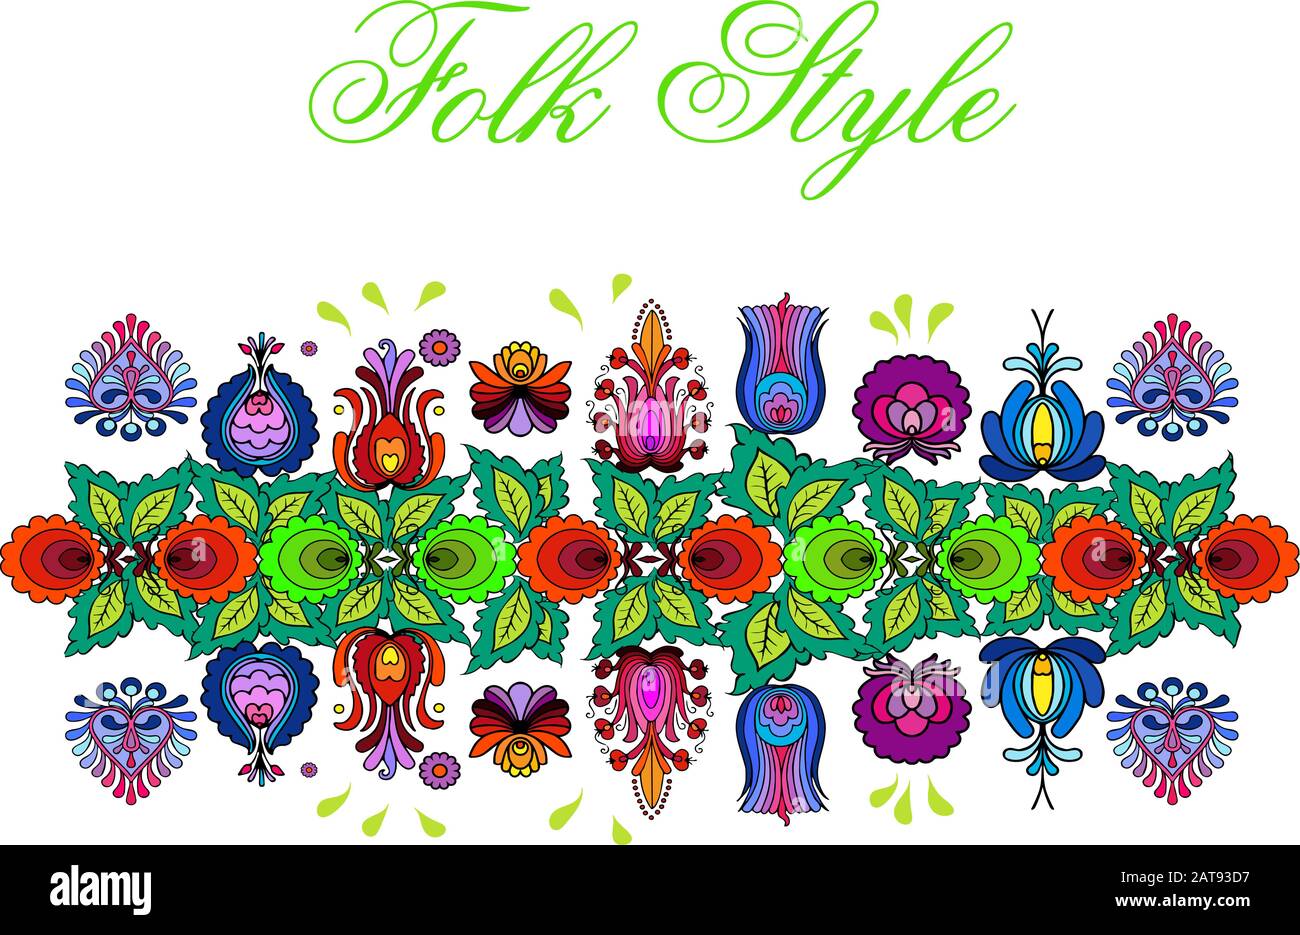 Bordure florale folklorique - guirlande de fleurs de style folklorique tchèque - vignette de mode Vector Illustration de Vecteur